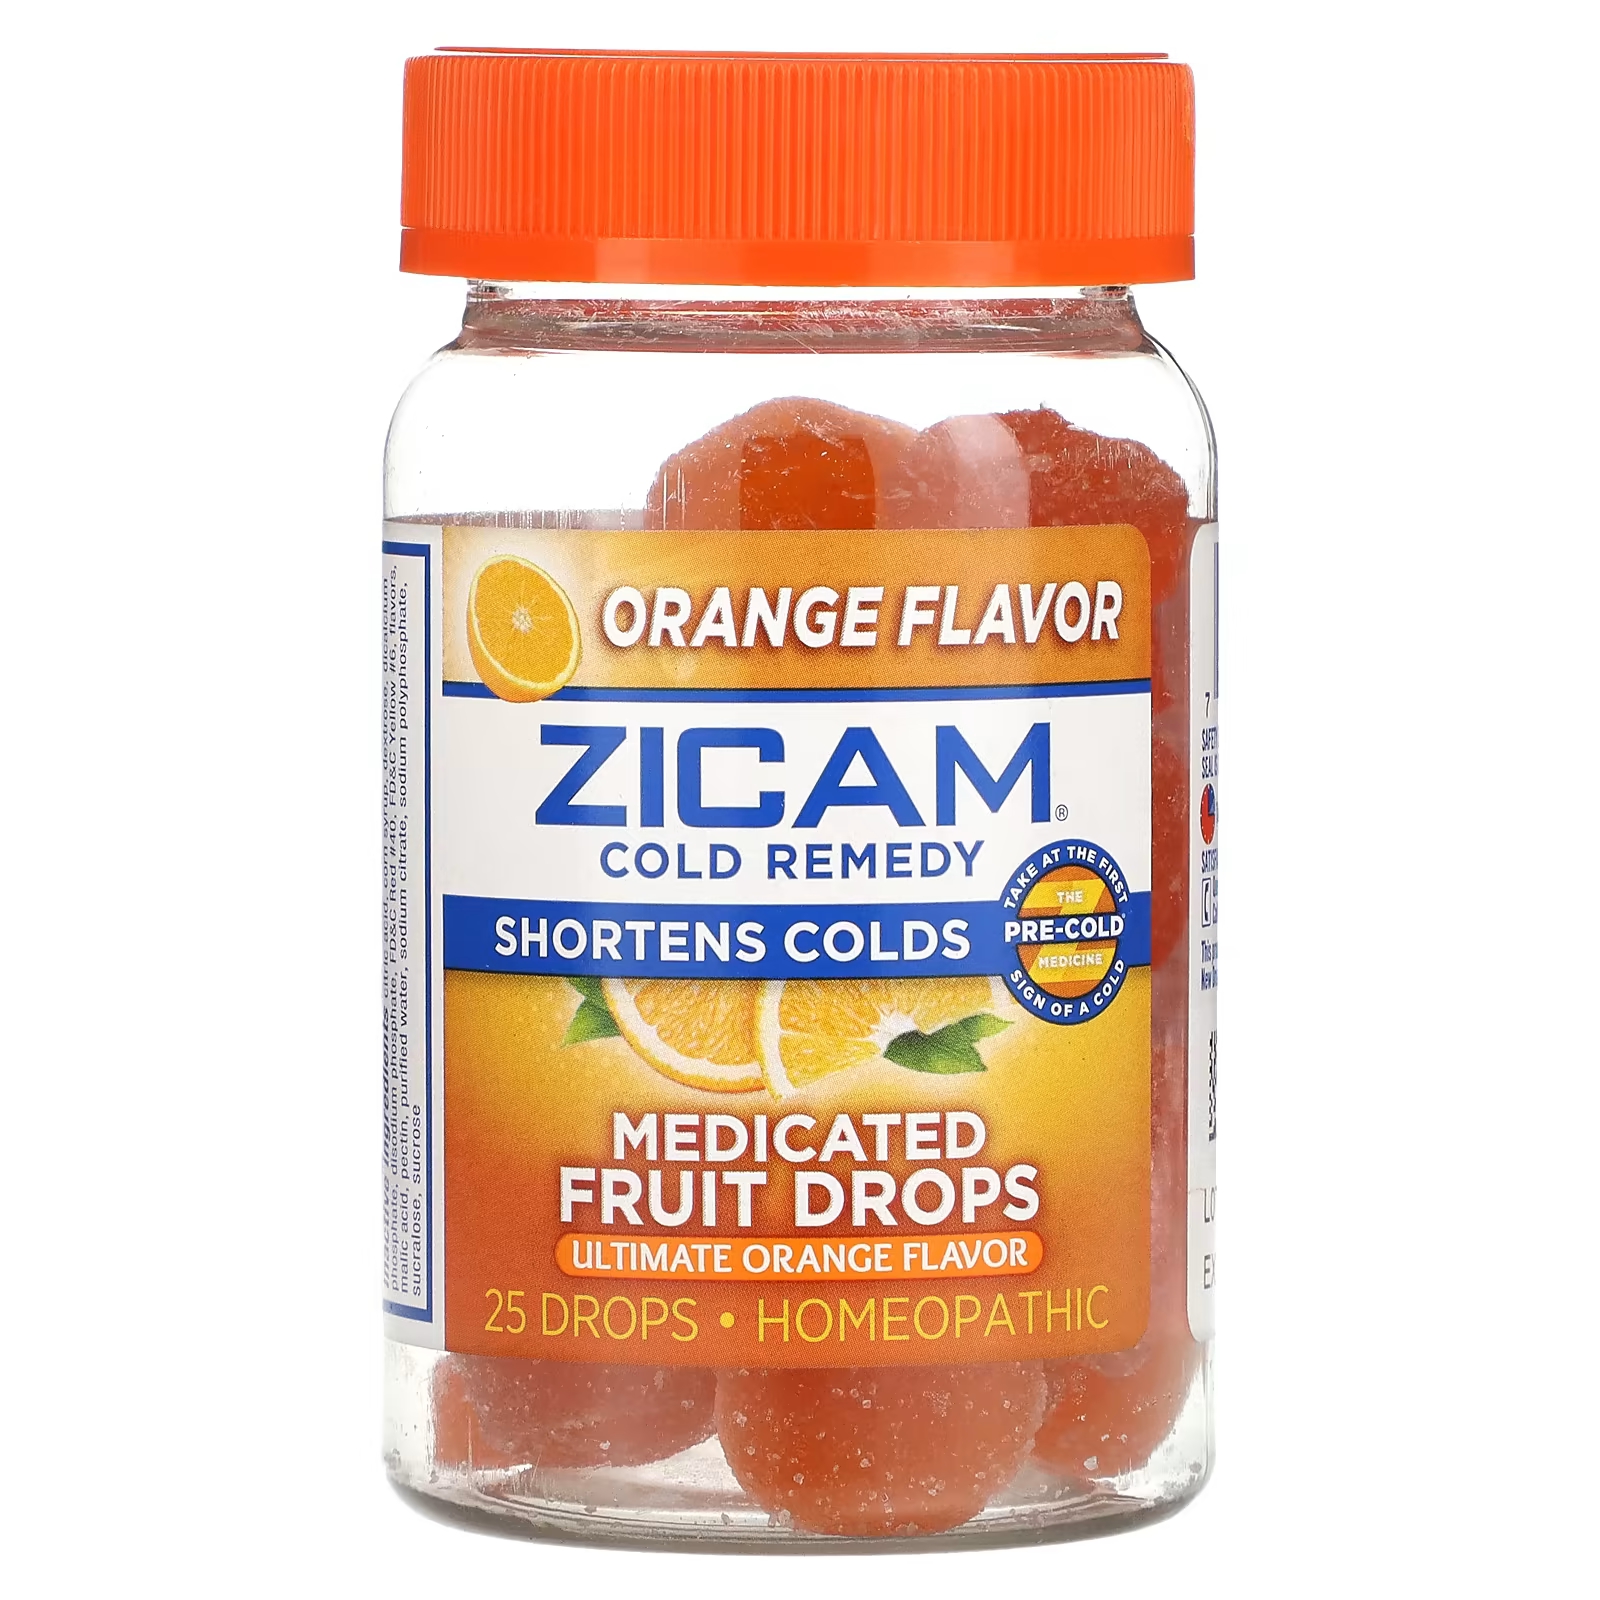 краснова мария ивановна природные способы лечения простуды Средство от простуды Zicam, лечебные фруктовые капли